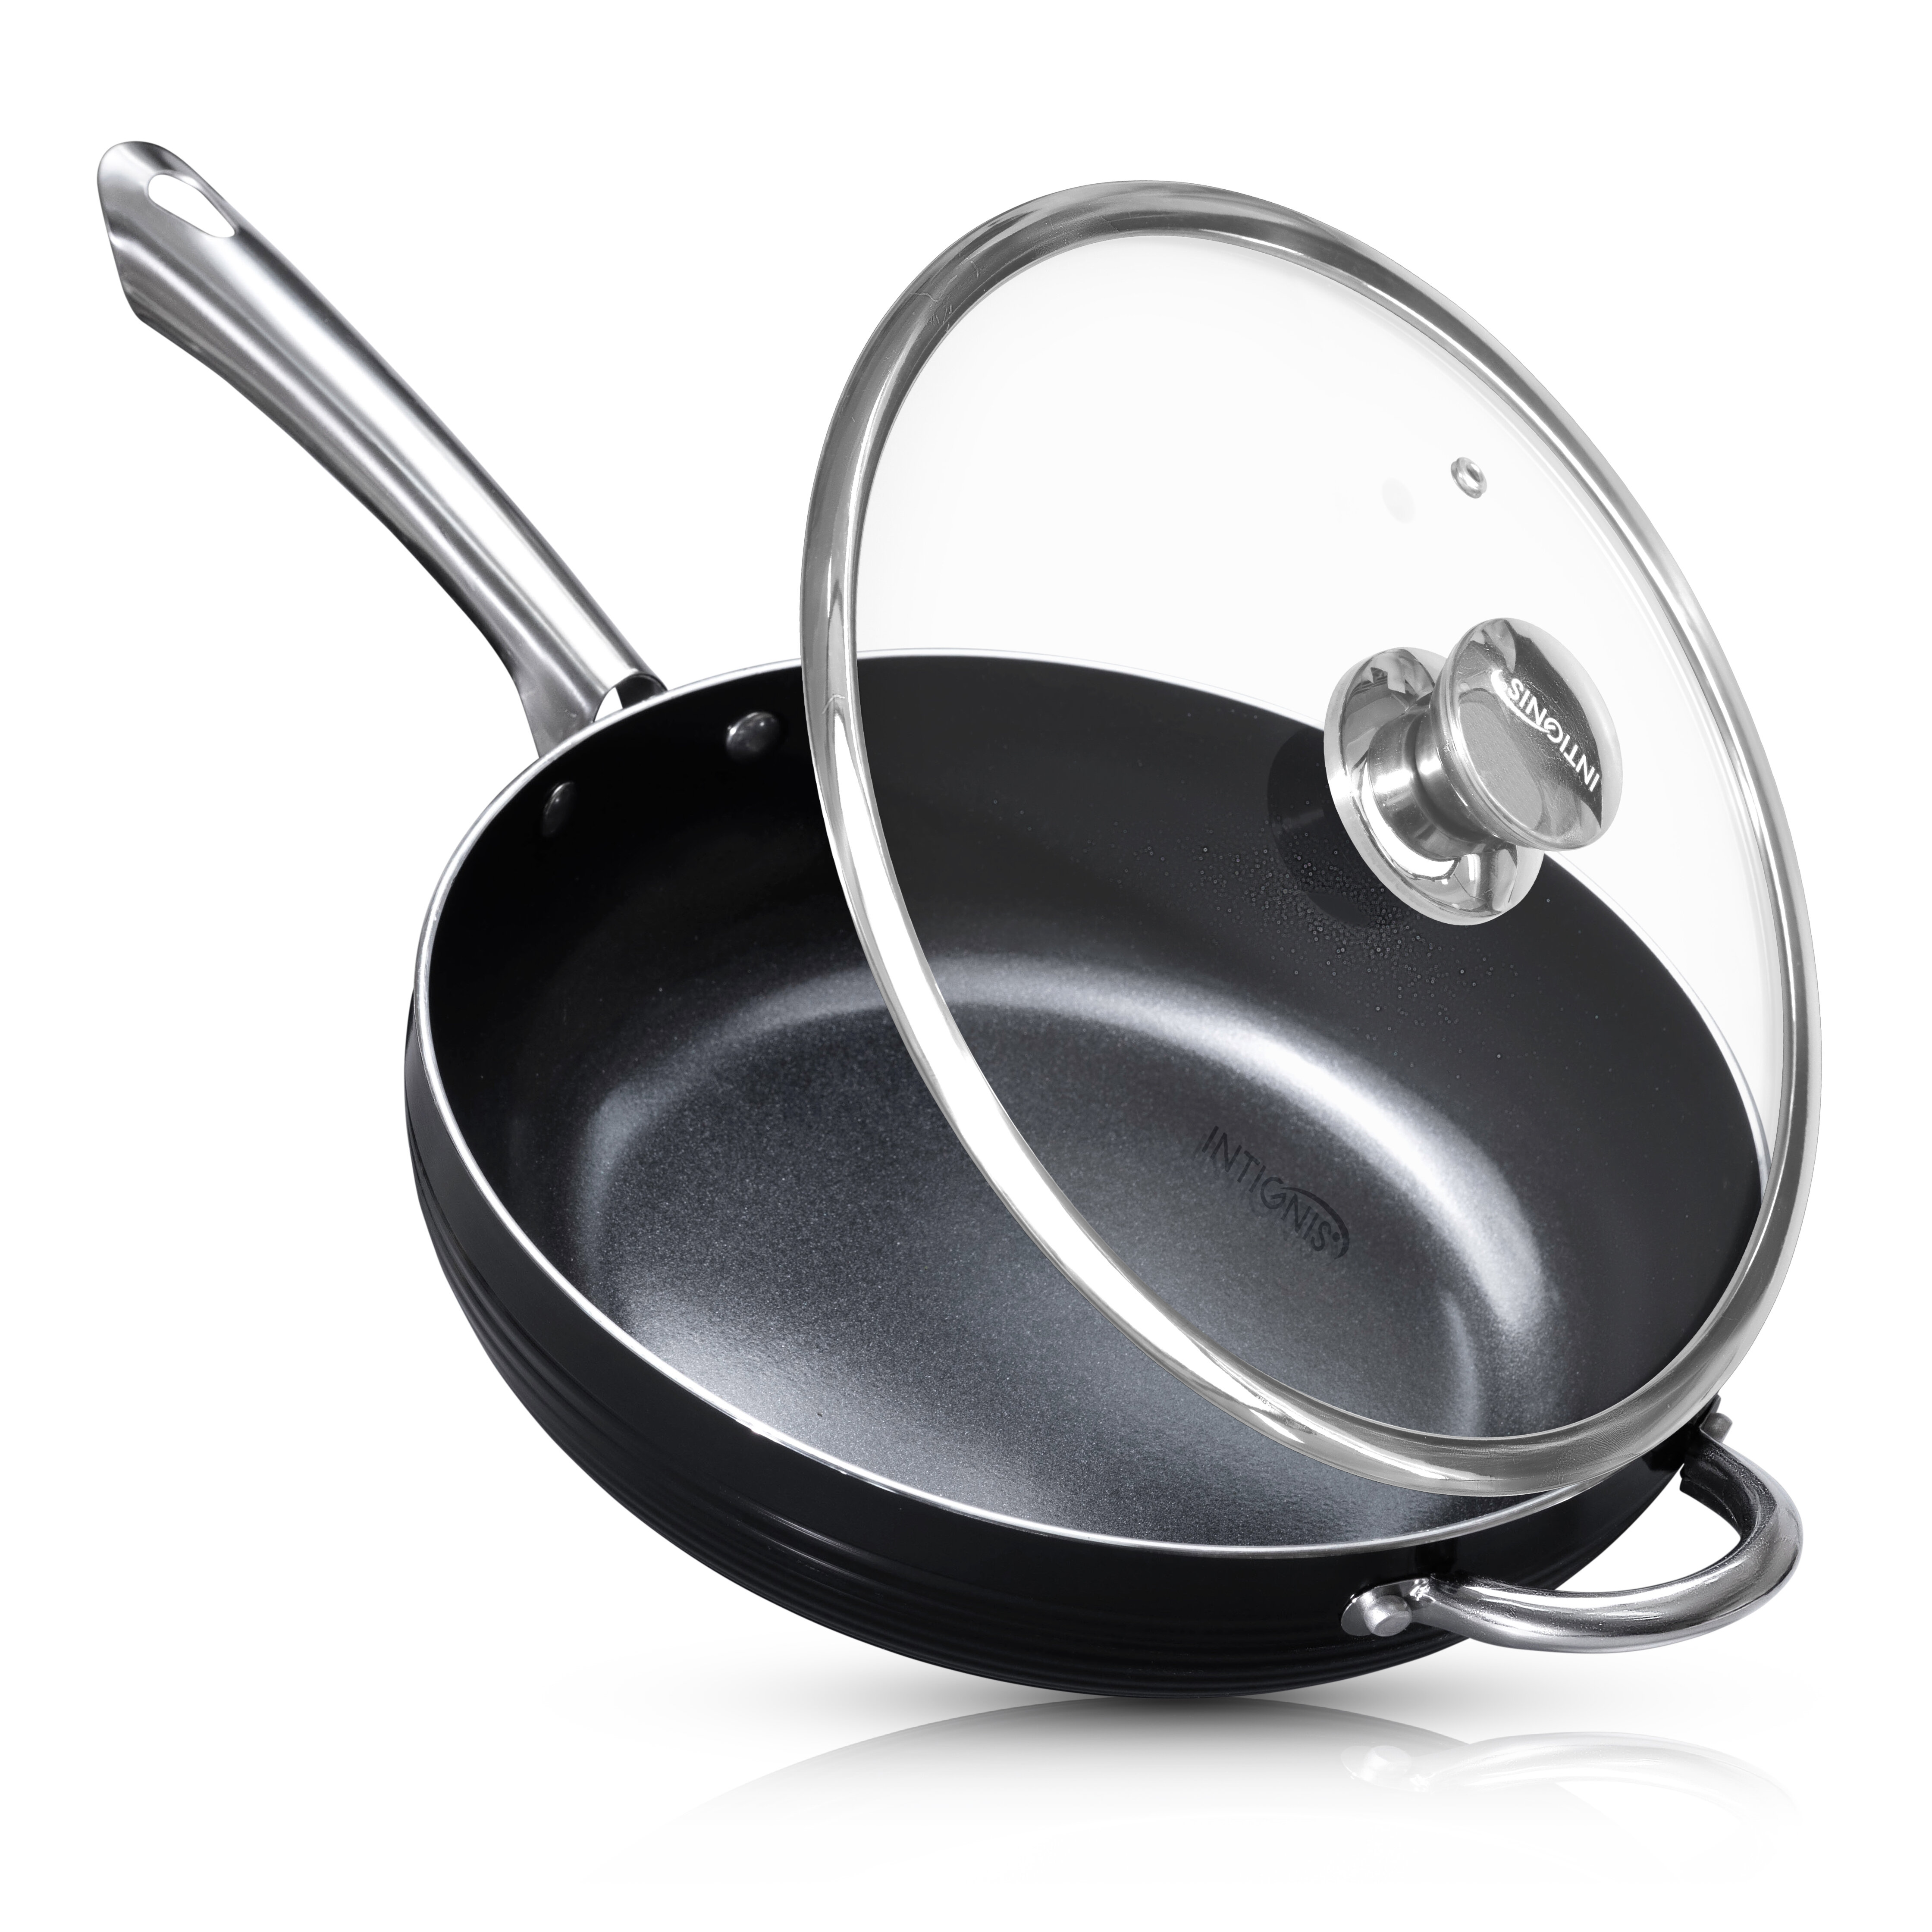 INTIGNIS Frying Pan Anti-Scratch Glass Lid - 28 cm Deep Sauté Pan